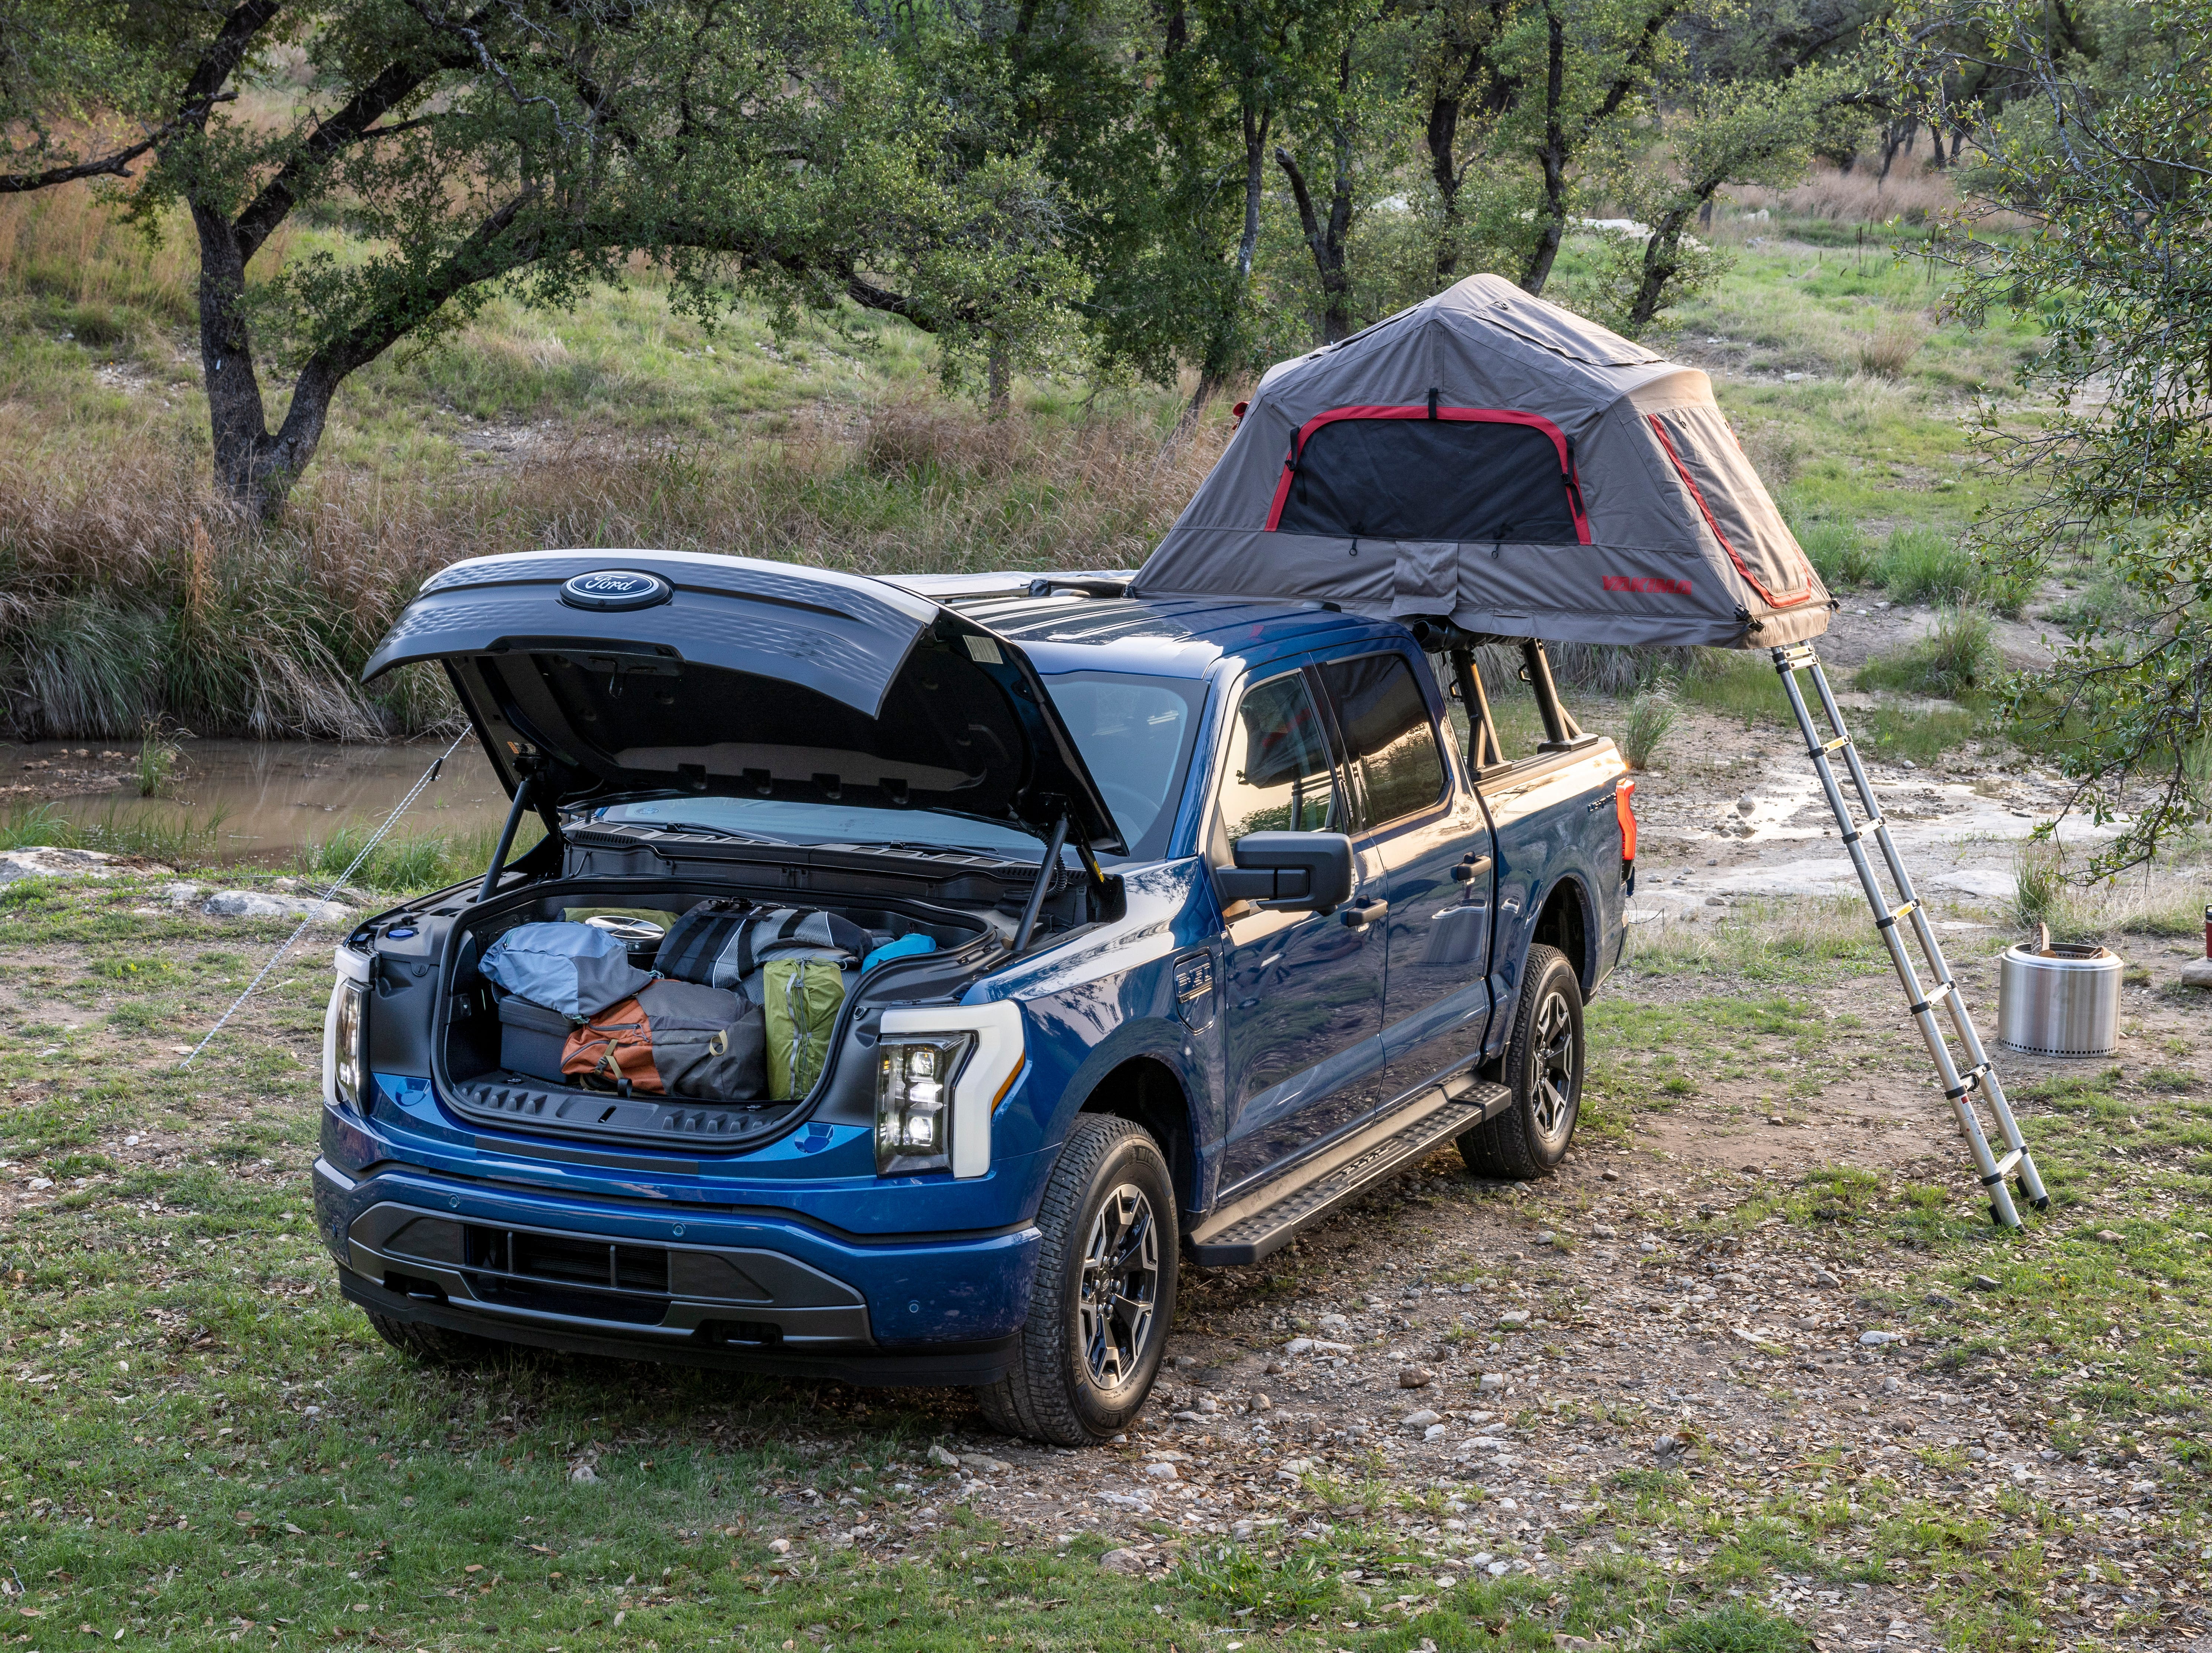 Ein blauer Lastwagen voller Campingausrüstung und einem Zelt mitten in einem Waldgebiet.